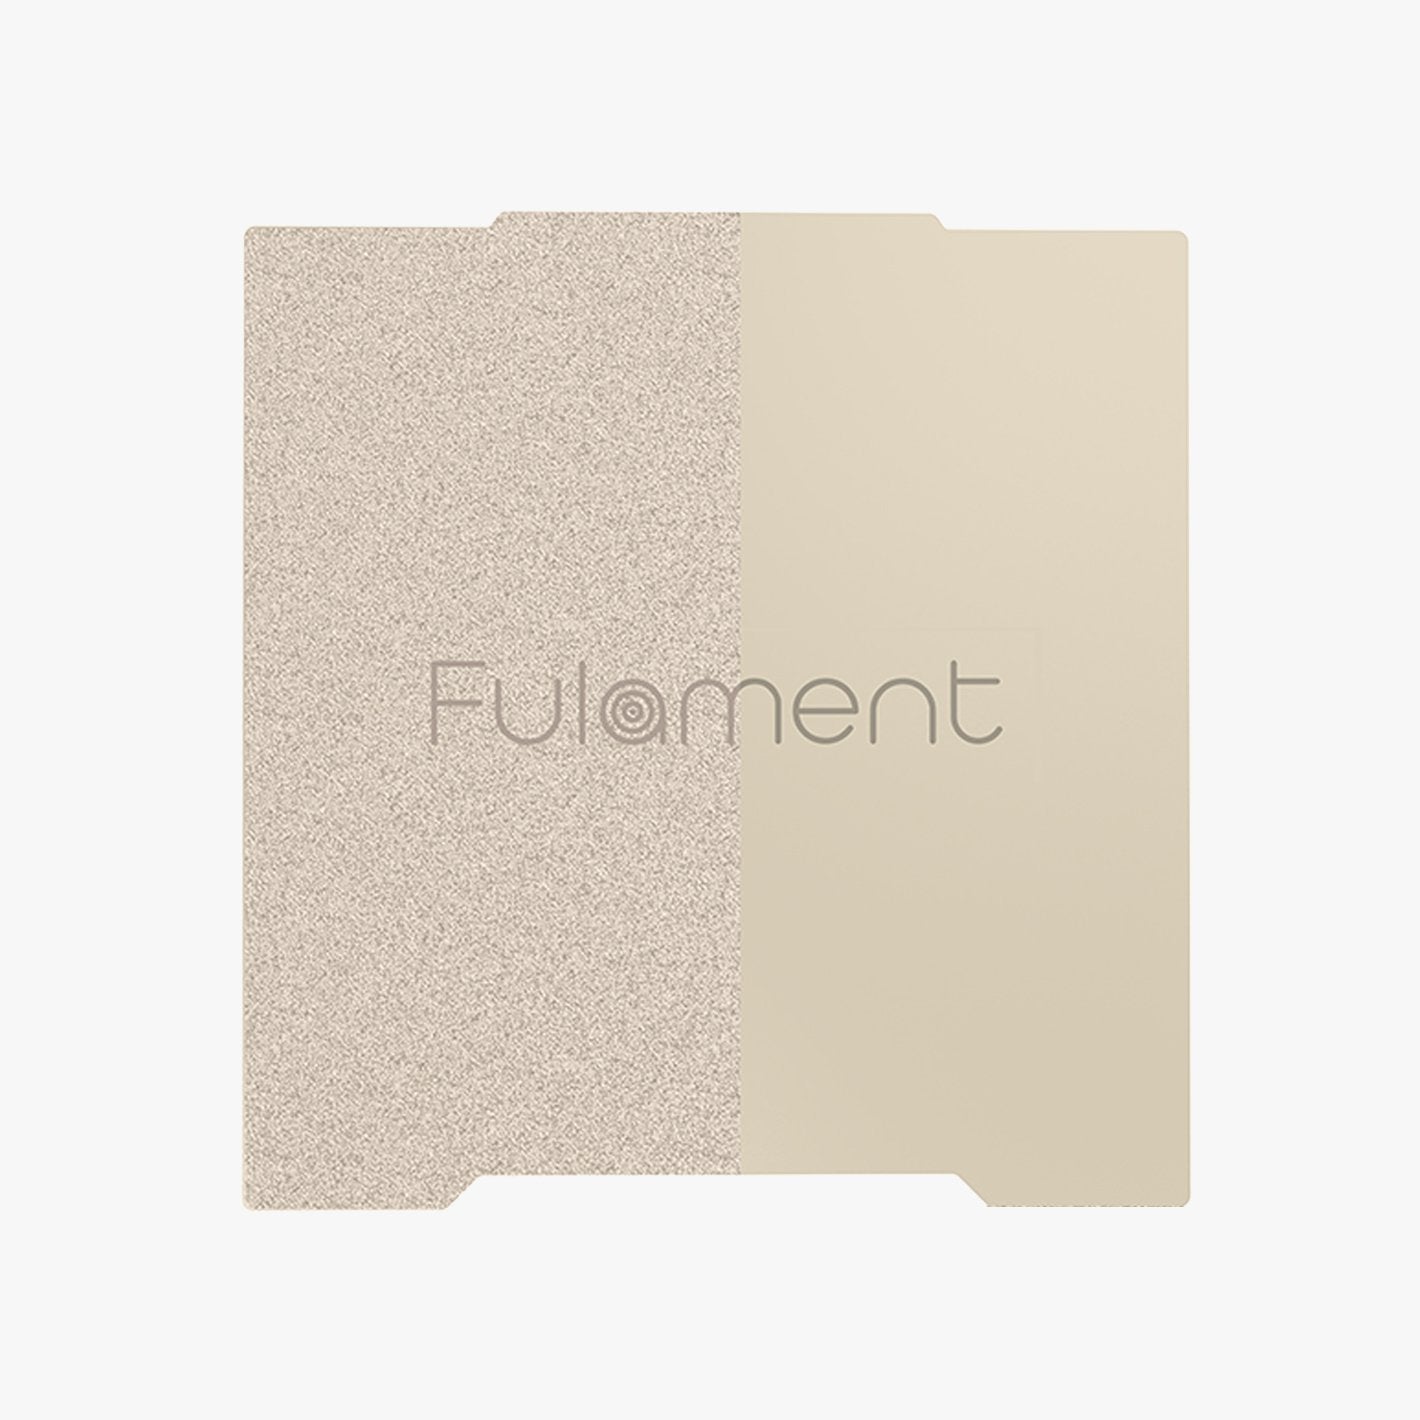 Fula-Flex 2.0 for Fula-Bed Fulament